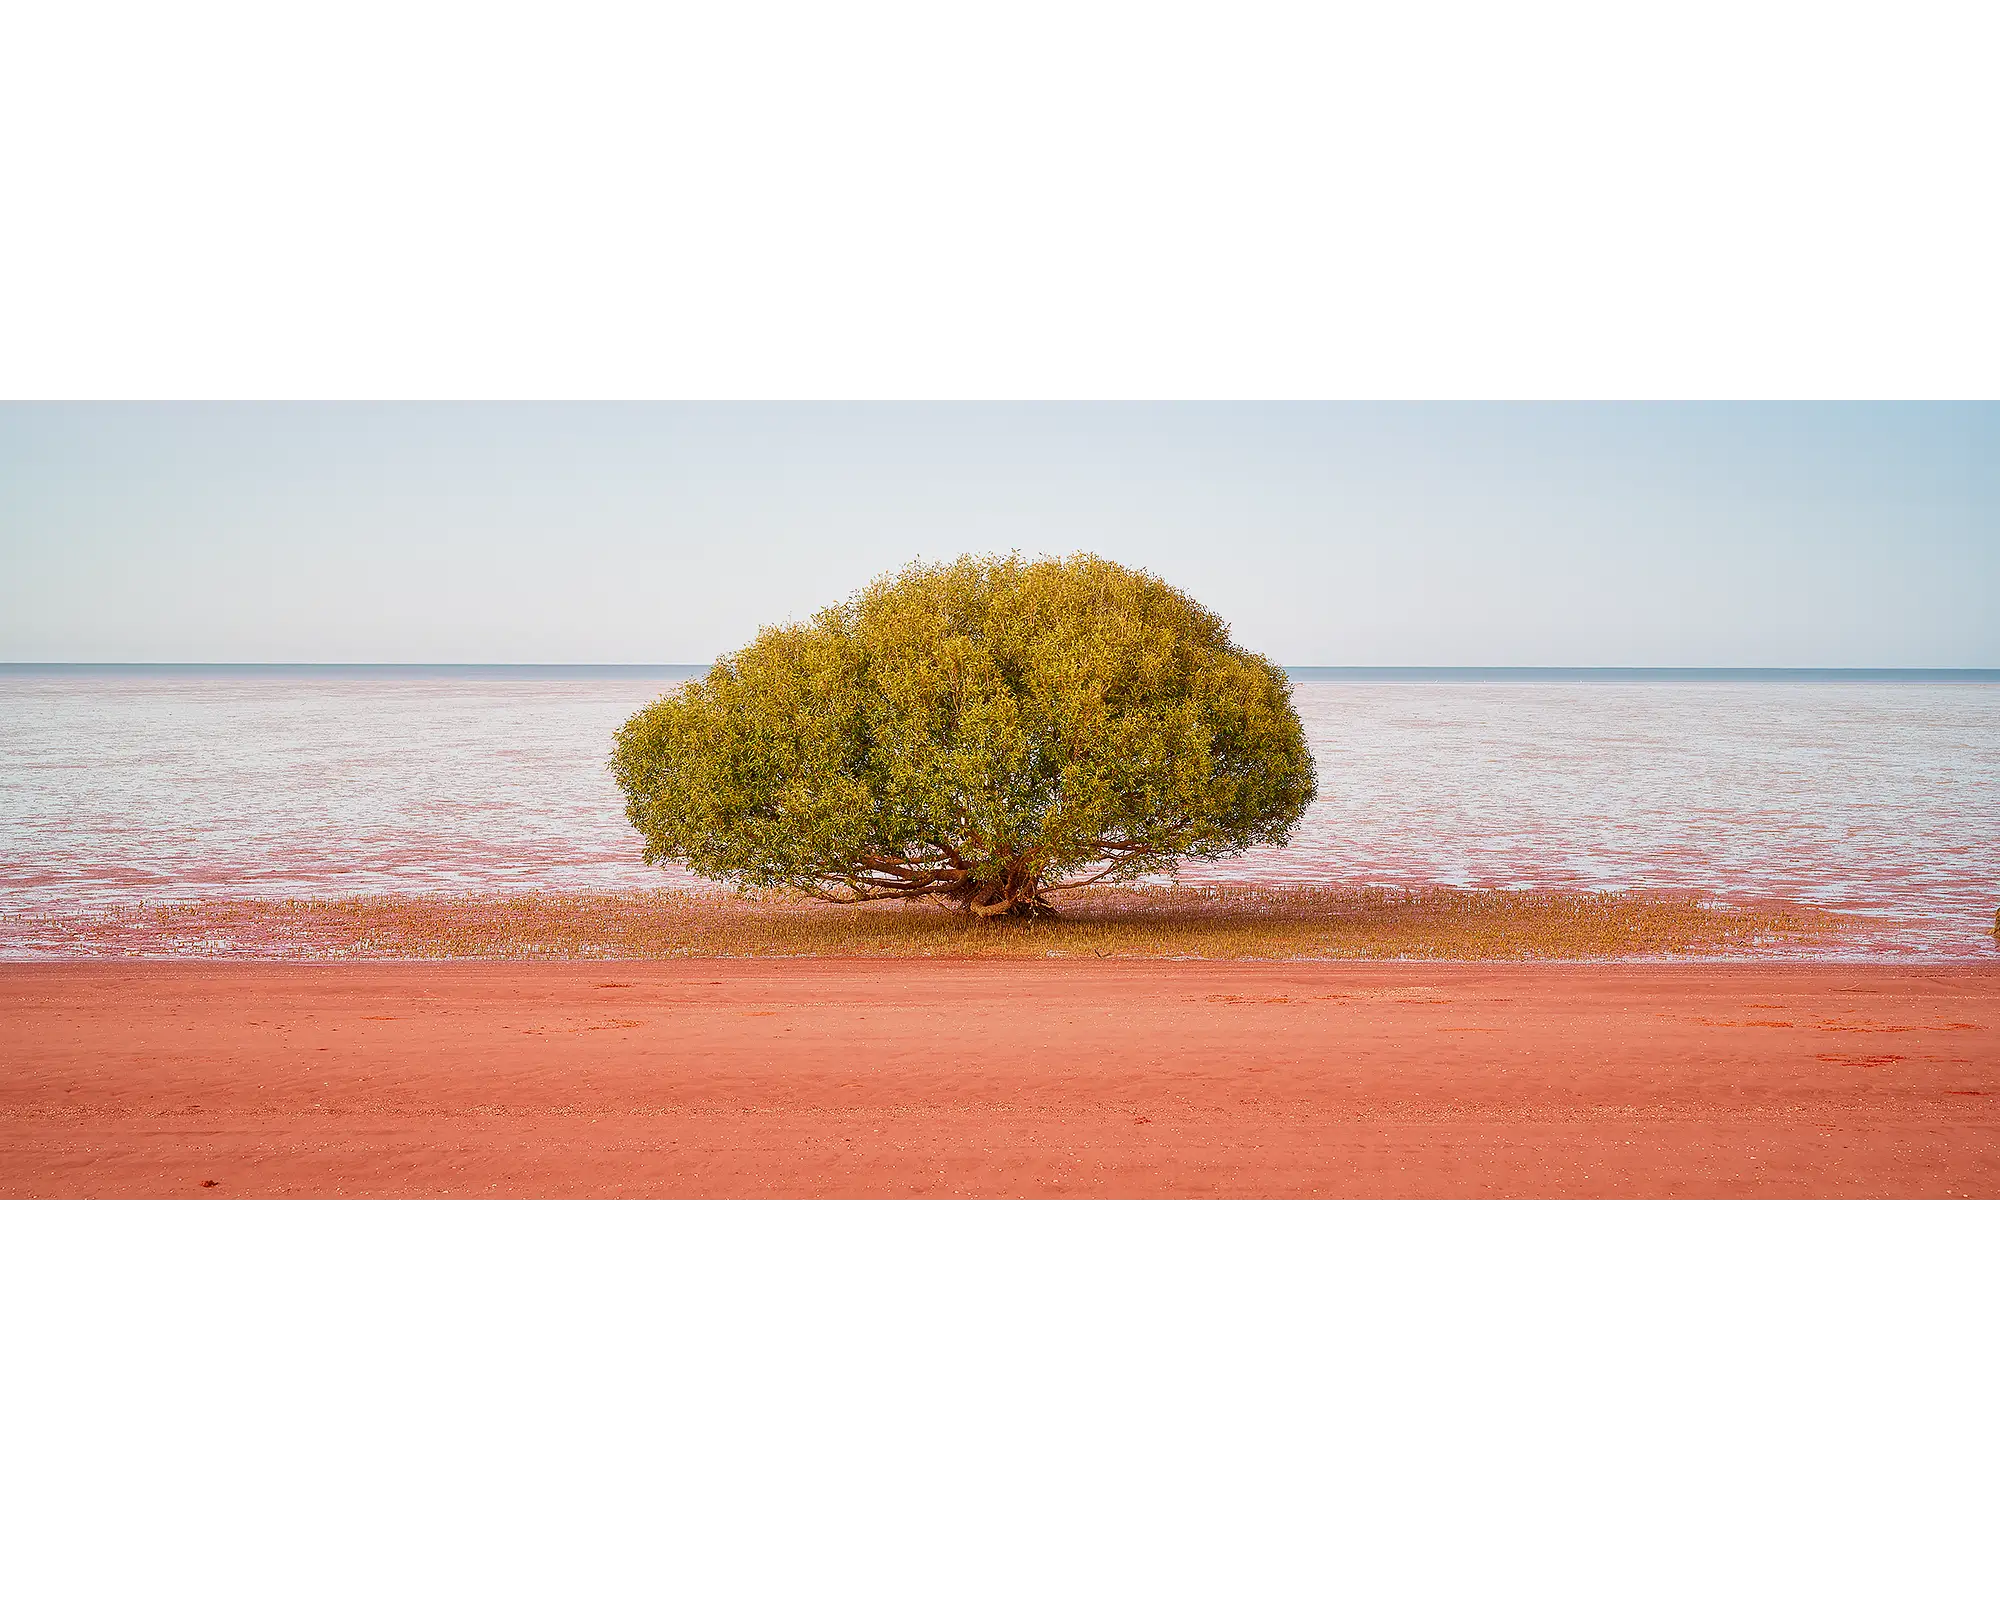 Single mnagrove tree at beach near Broome, The Kimberley.